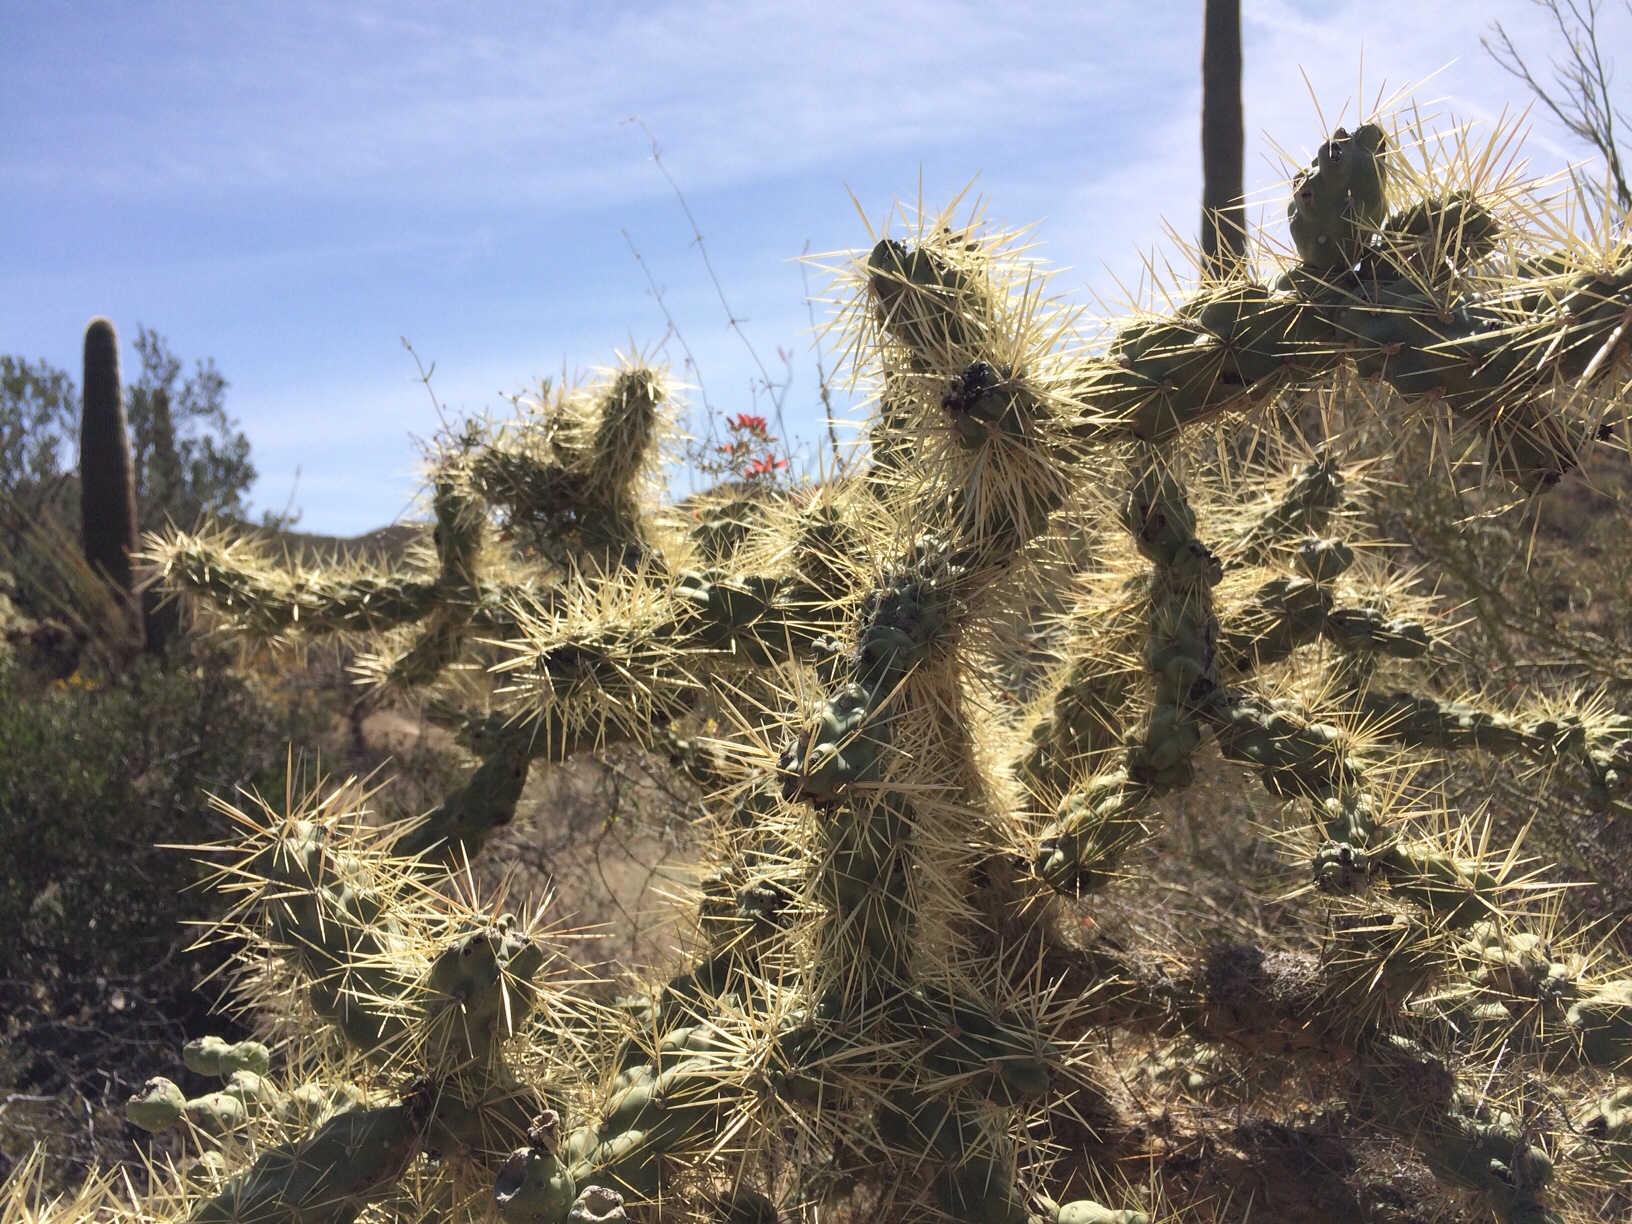 Hairy cactus